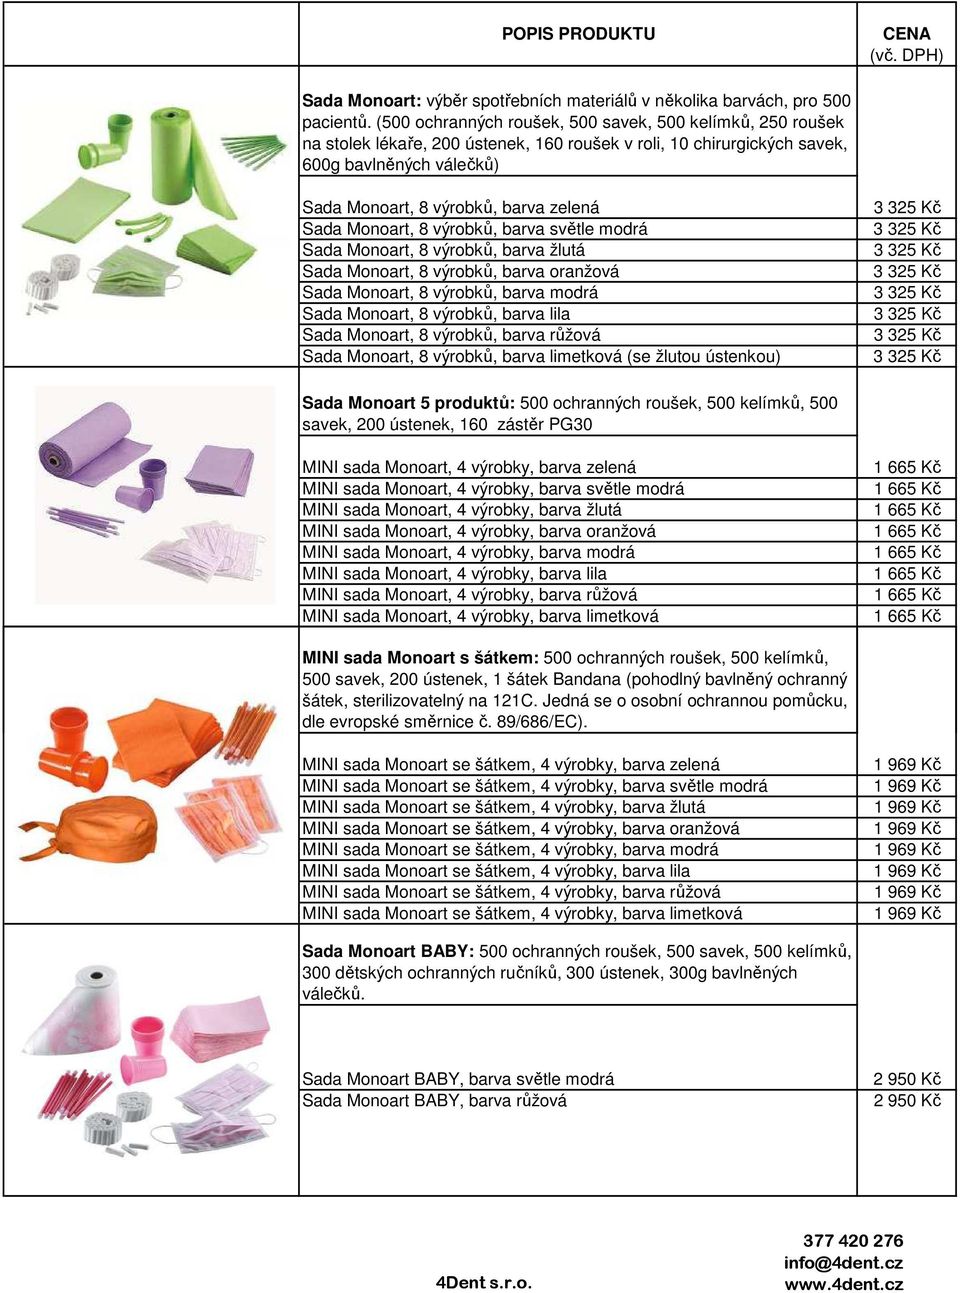 Sada Monoart, 8 výrobků, barva světle modrá Sada Monoart, 8 výrobků, barva žlutá Sada Monoart, 8 výrobků, barva oranžová Sada Monoart, 8 výrobků, barva modrá Sada Monoart, 8 výrobků, barva lila Sada